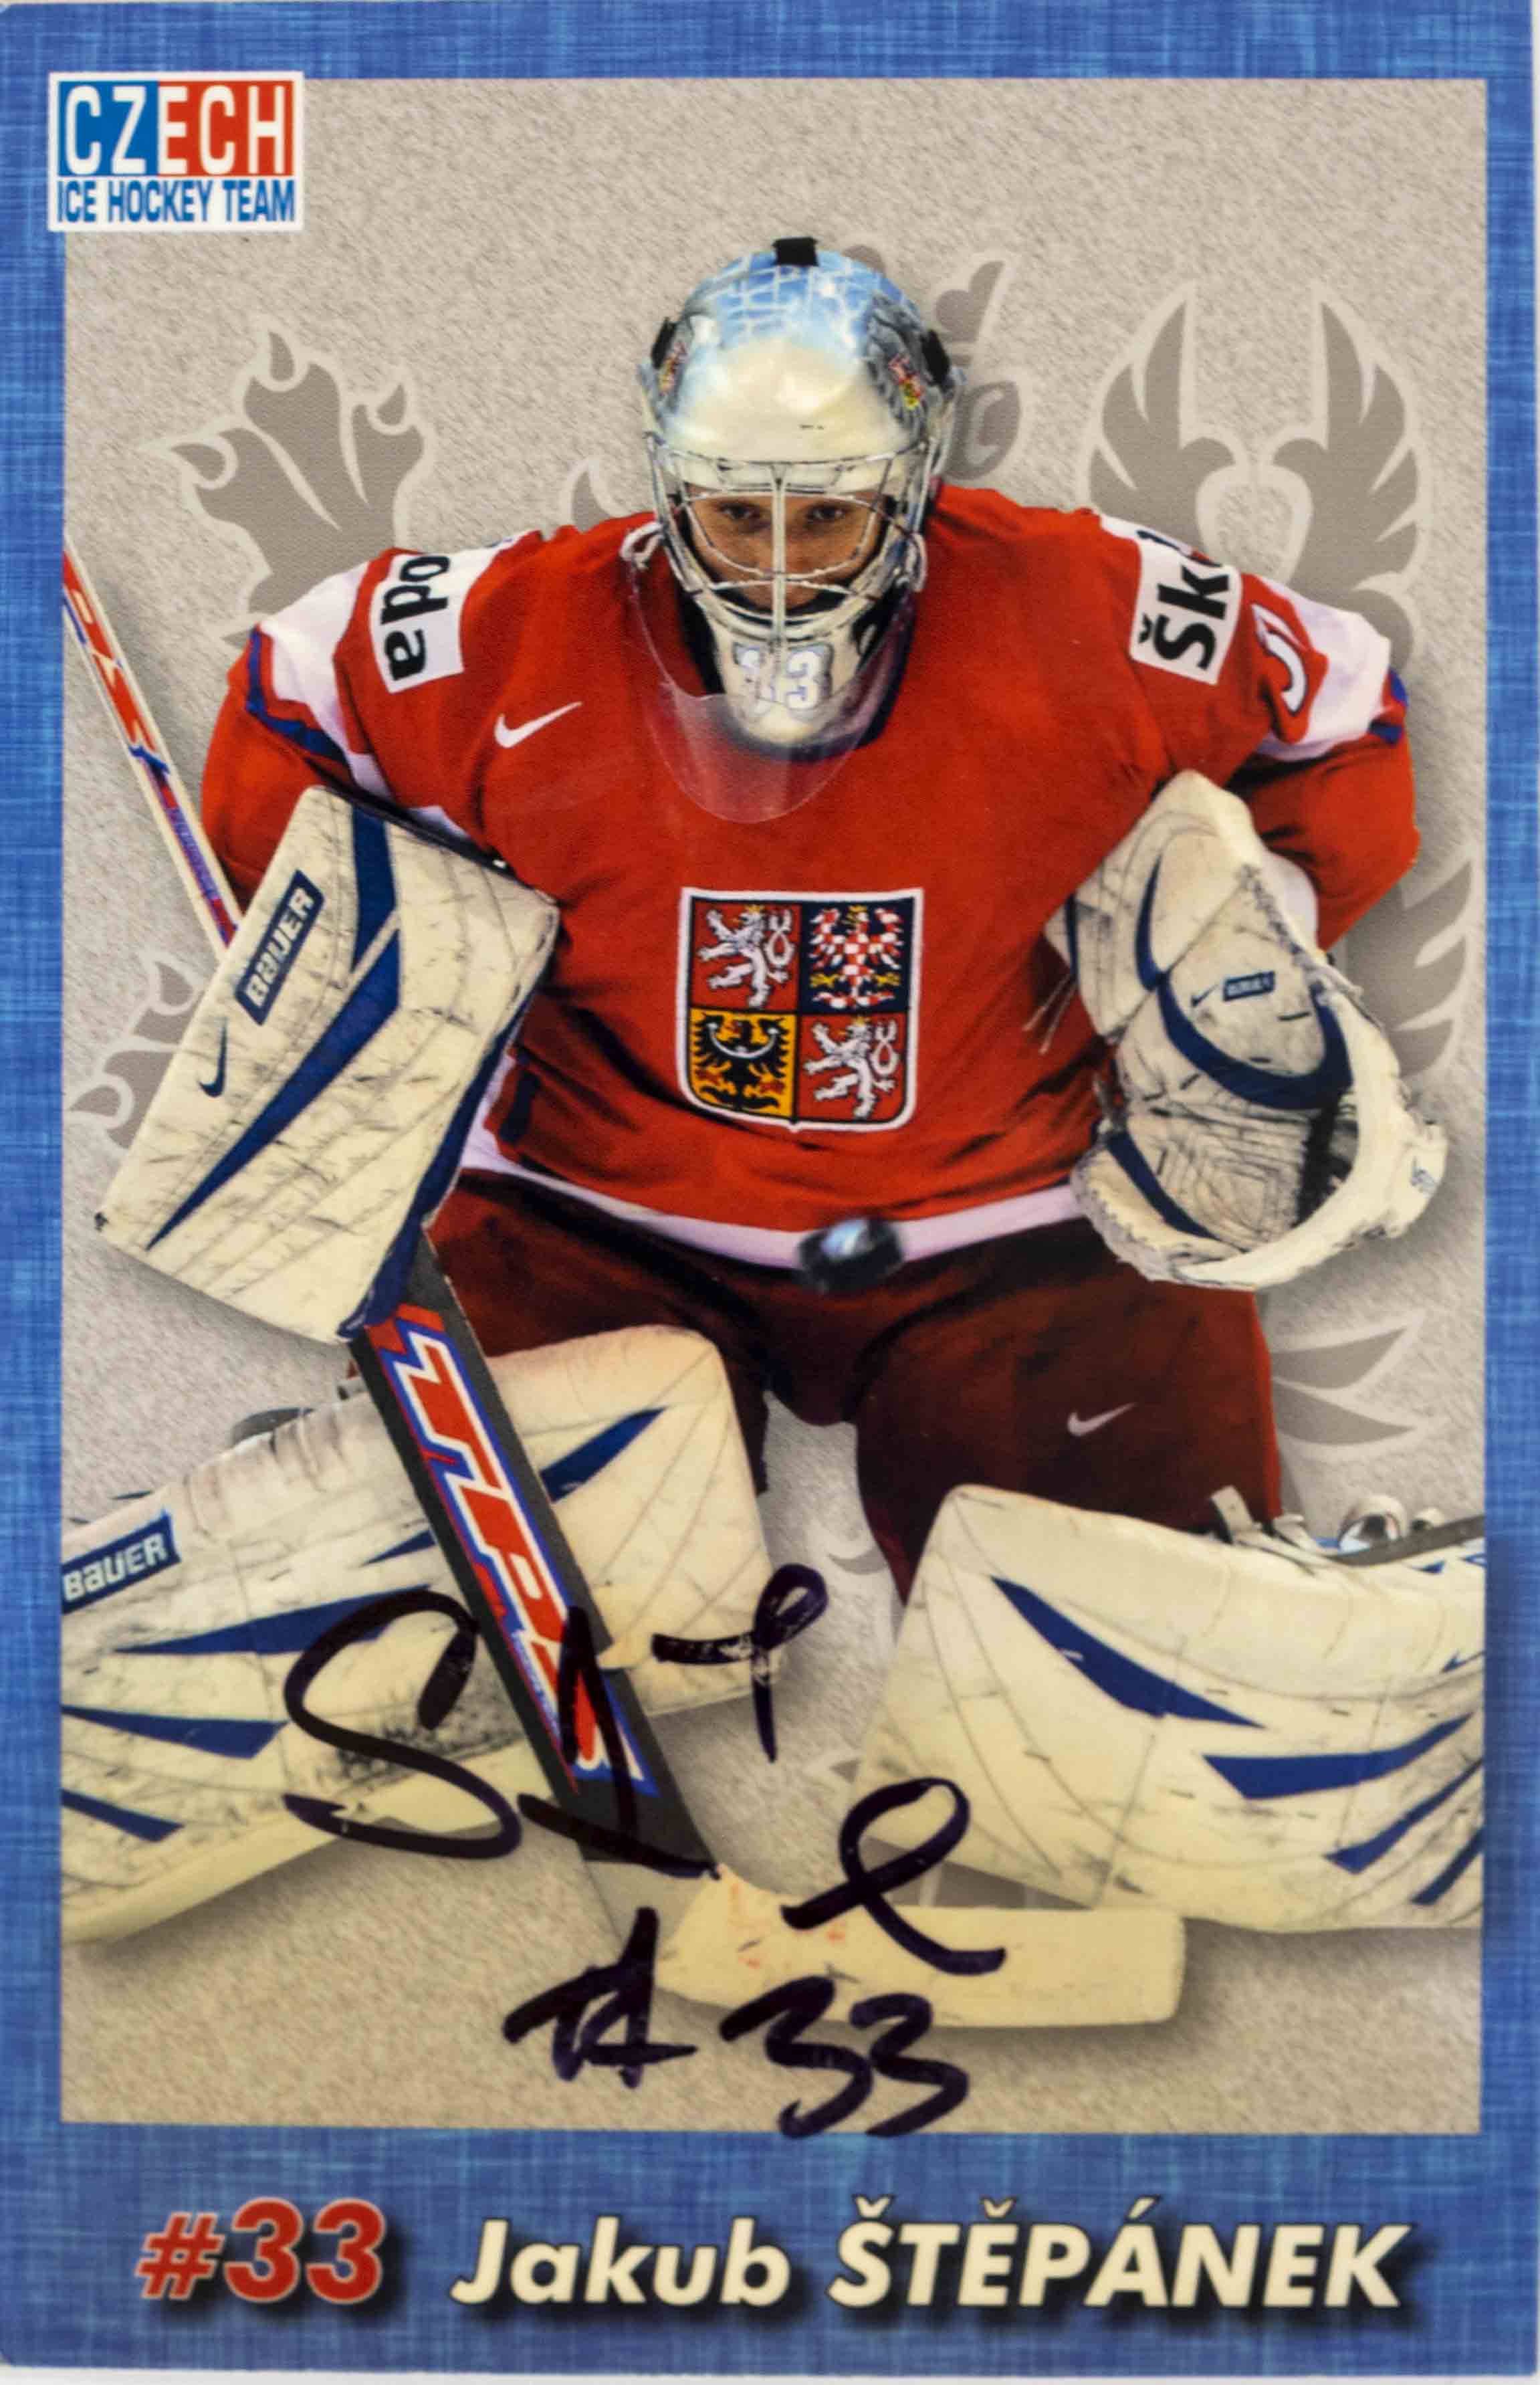 Hokejová karta, Czech Ice hockey team, Jakub Štěpánek, autogram